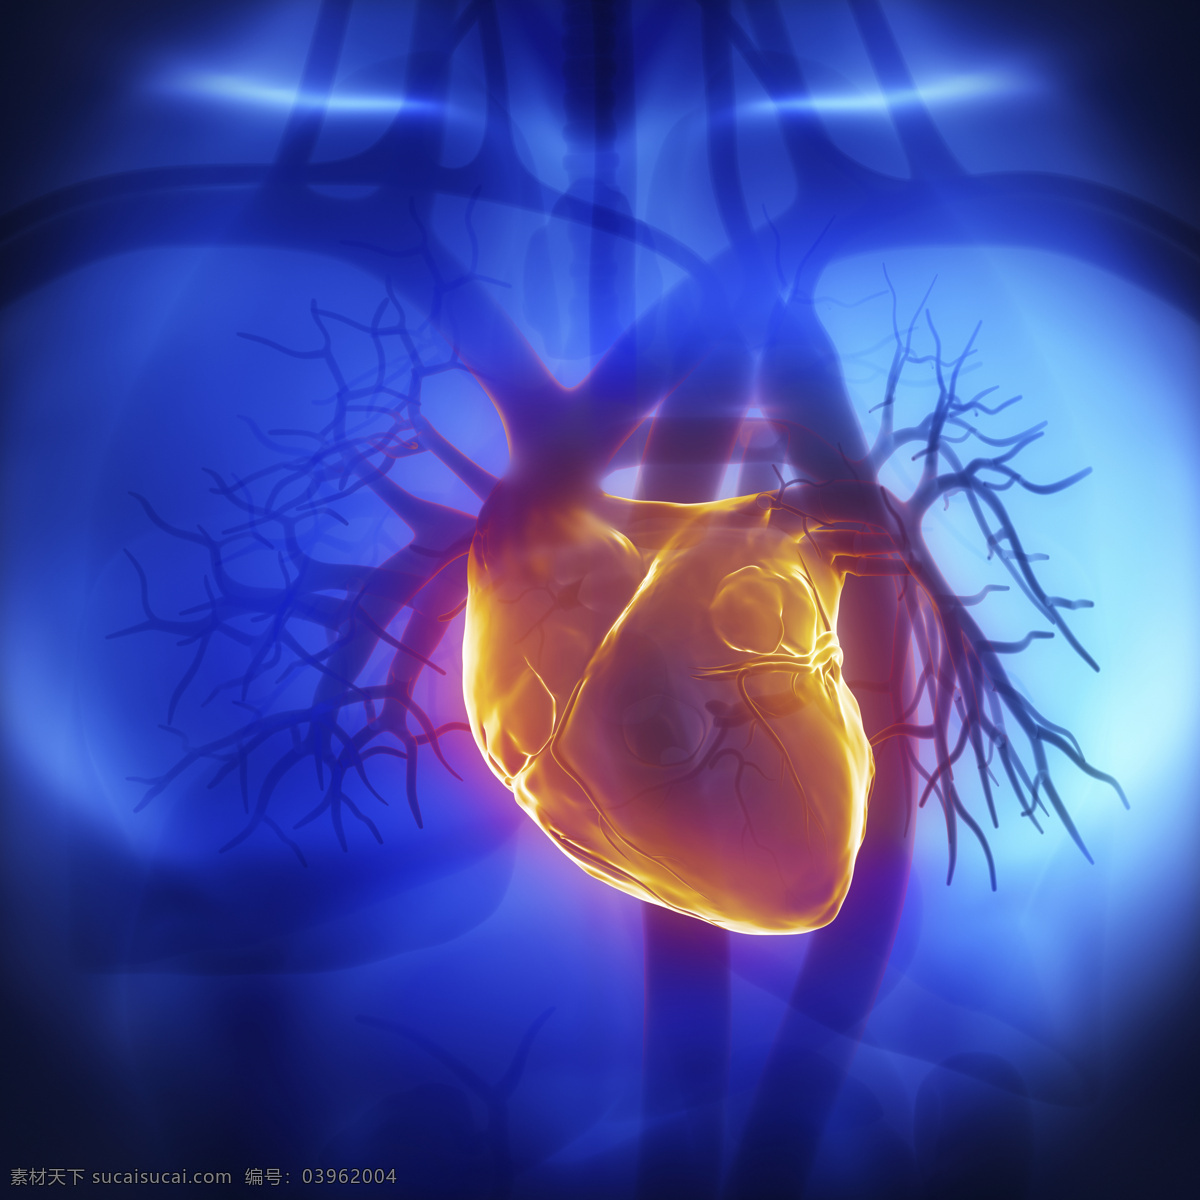 心脏 血管 器官 男性器官 心脏器官 血管器官 人体器官 医疗科学 医学 人体器官图 人物图片